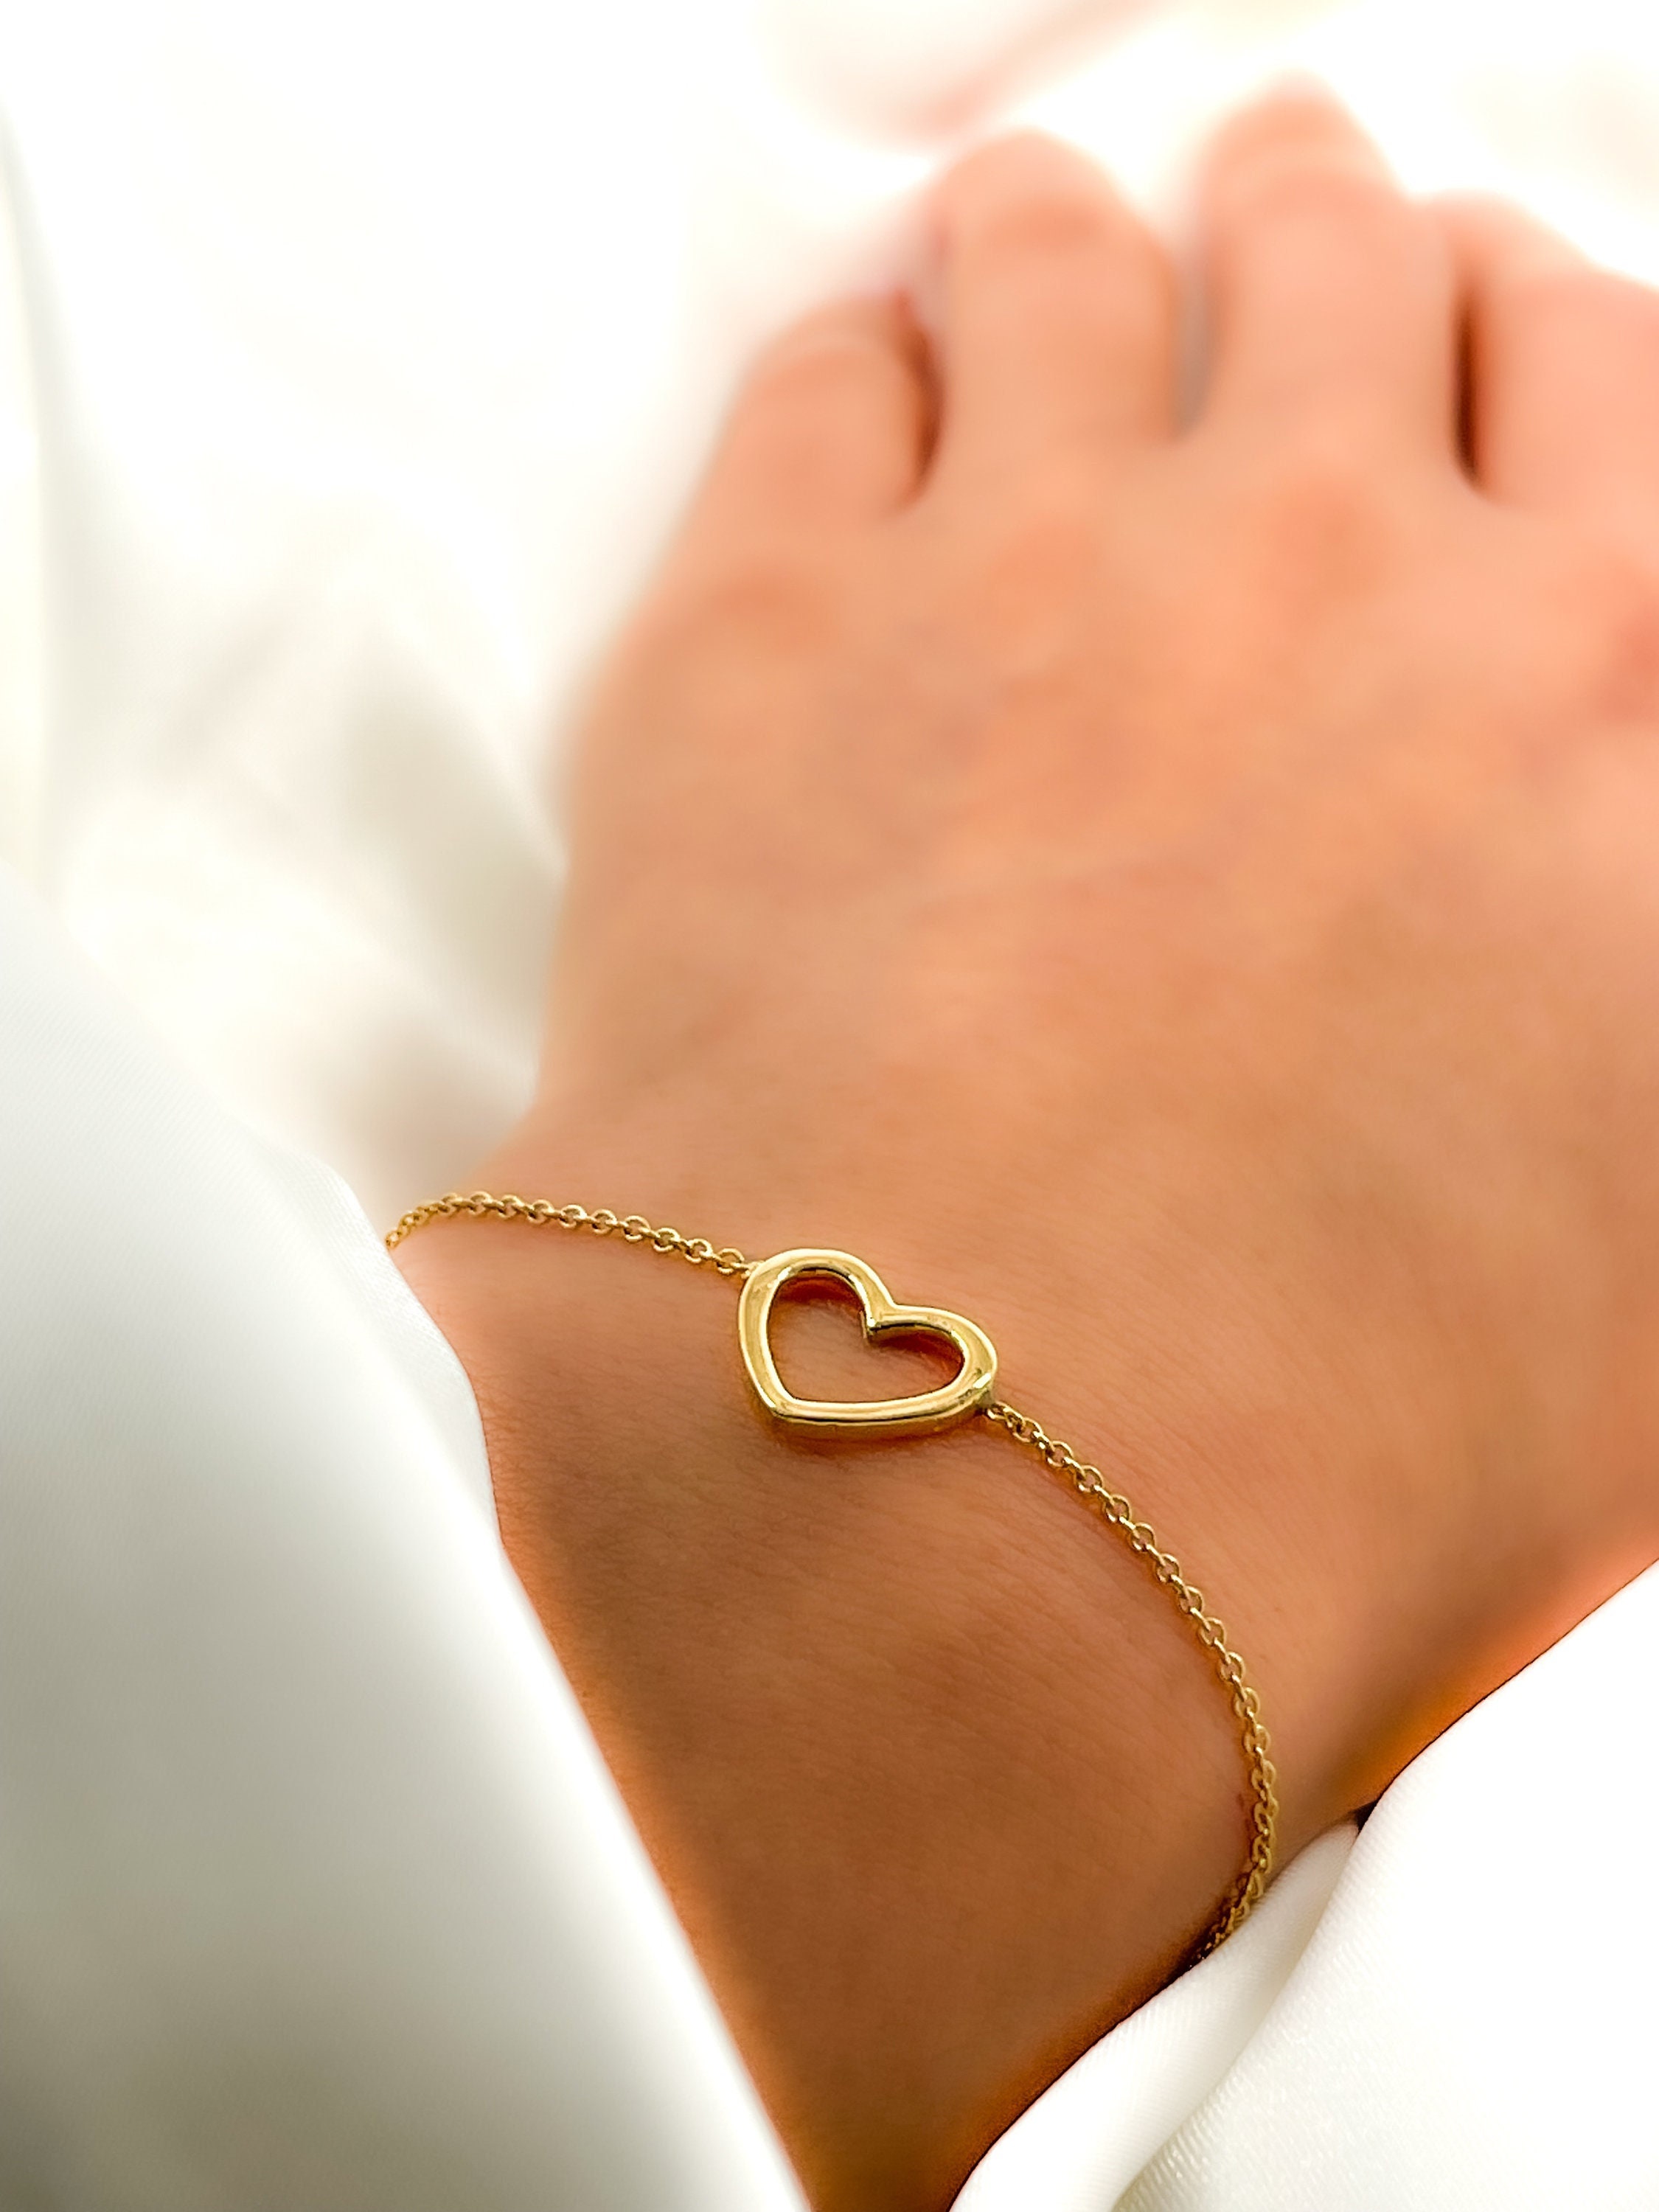 Tiny Hearts Sterling Silver Bracelet – Handmade Joy